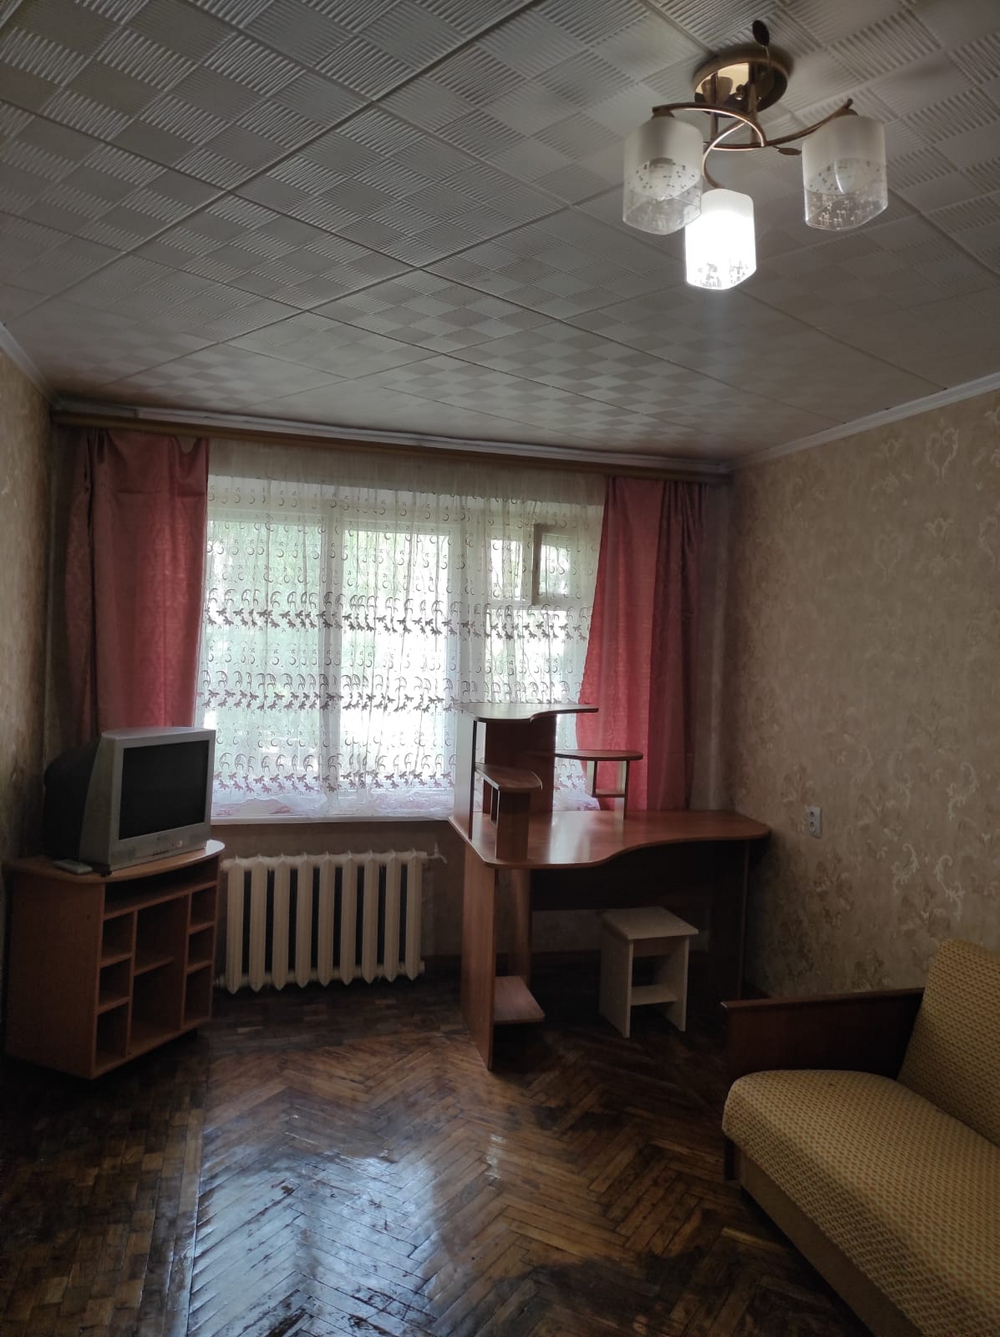 Аренда 1-комнатной квартиры, Воронеж